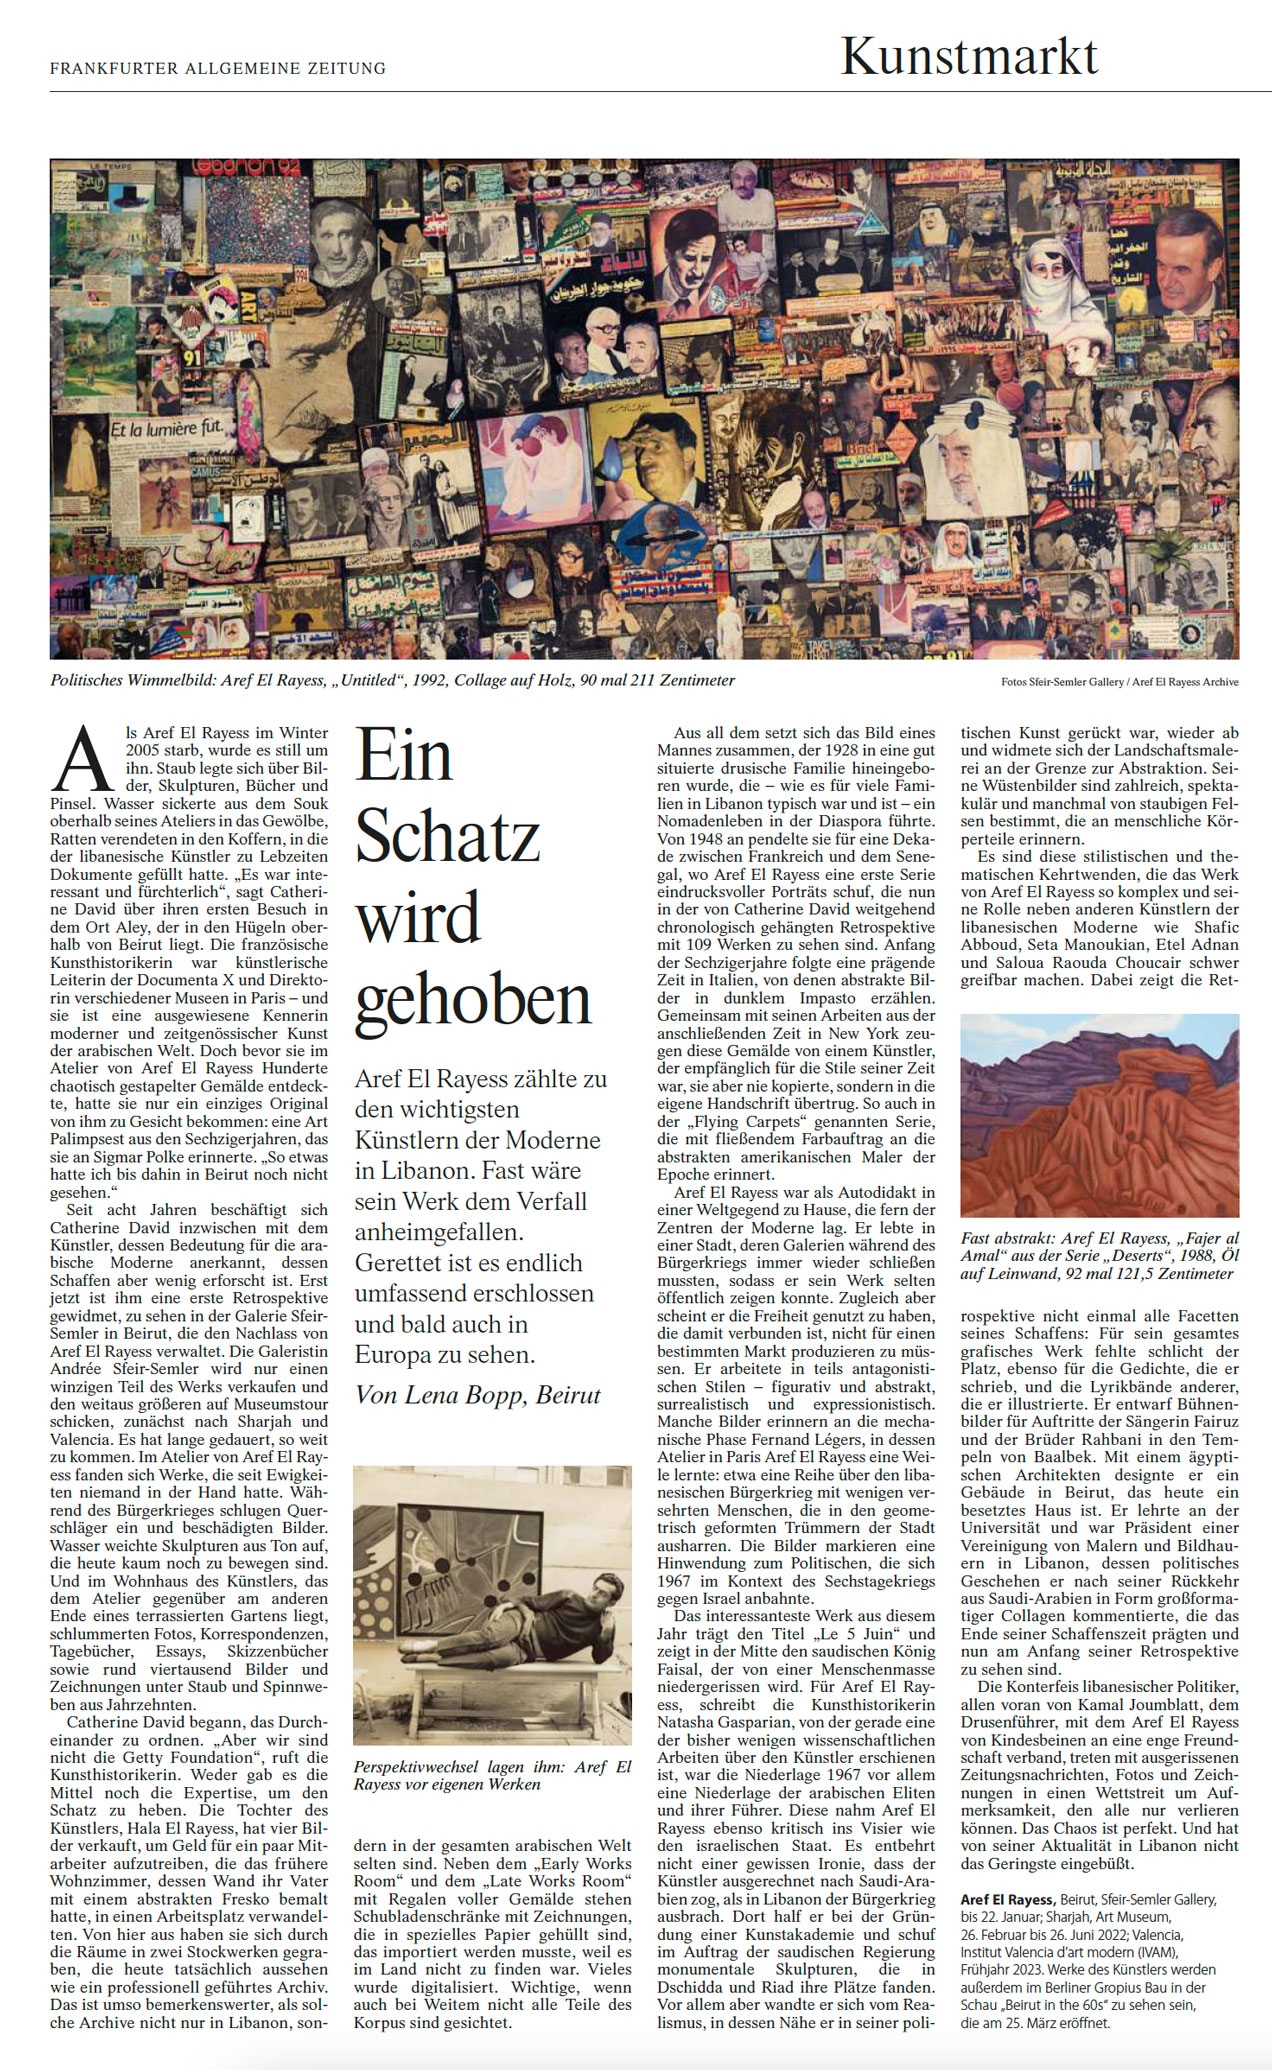 "Ein Schatz wird gehoben", Article on Aref El Rayess in our Gallery space in Beirut by Lena Bopp via Frankfurter Allgemeine Zeitung, January 8, 2022